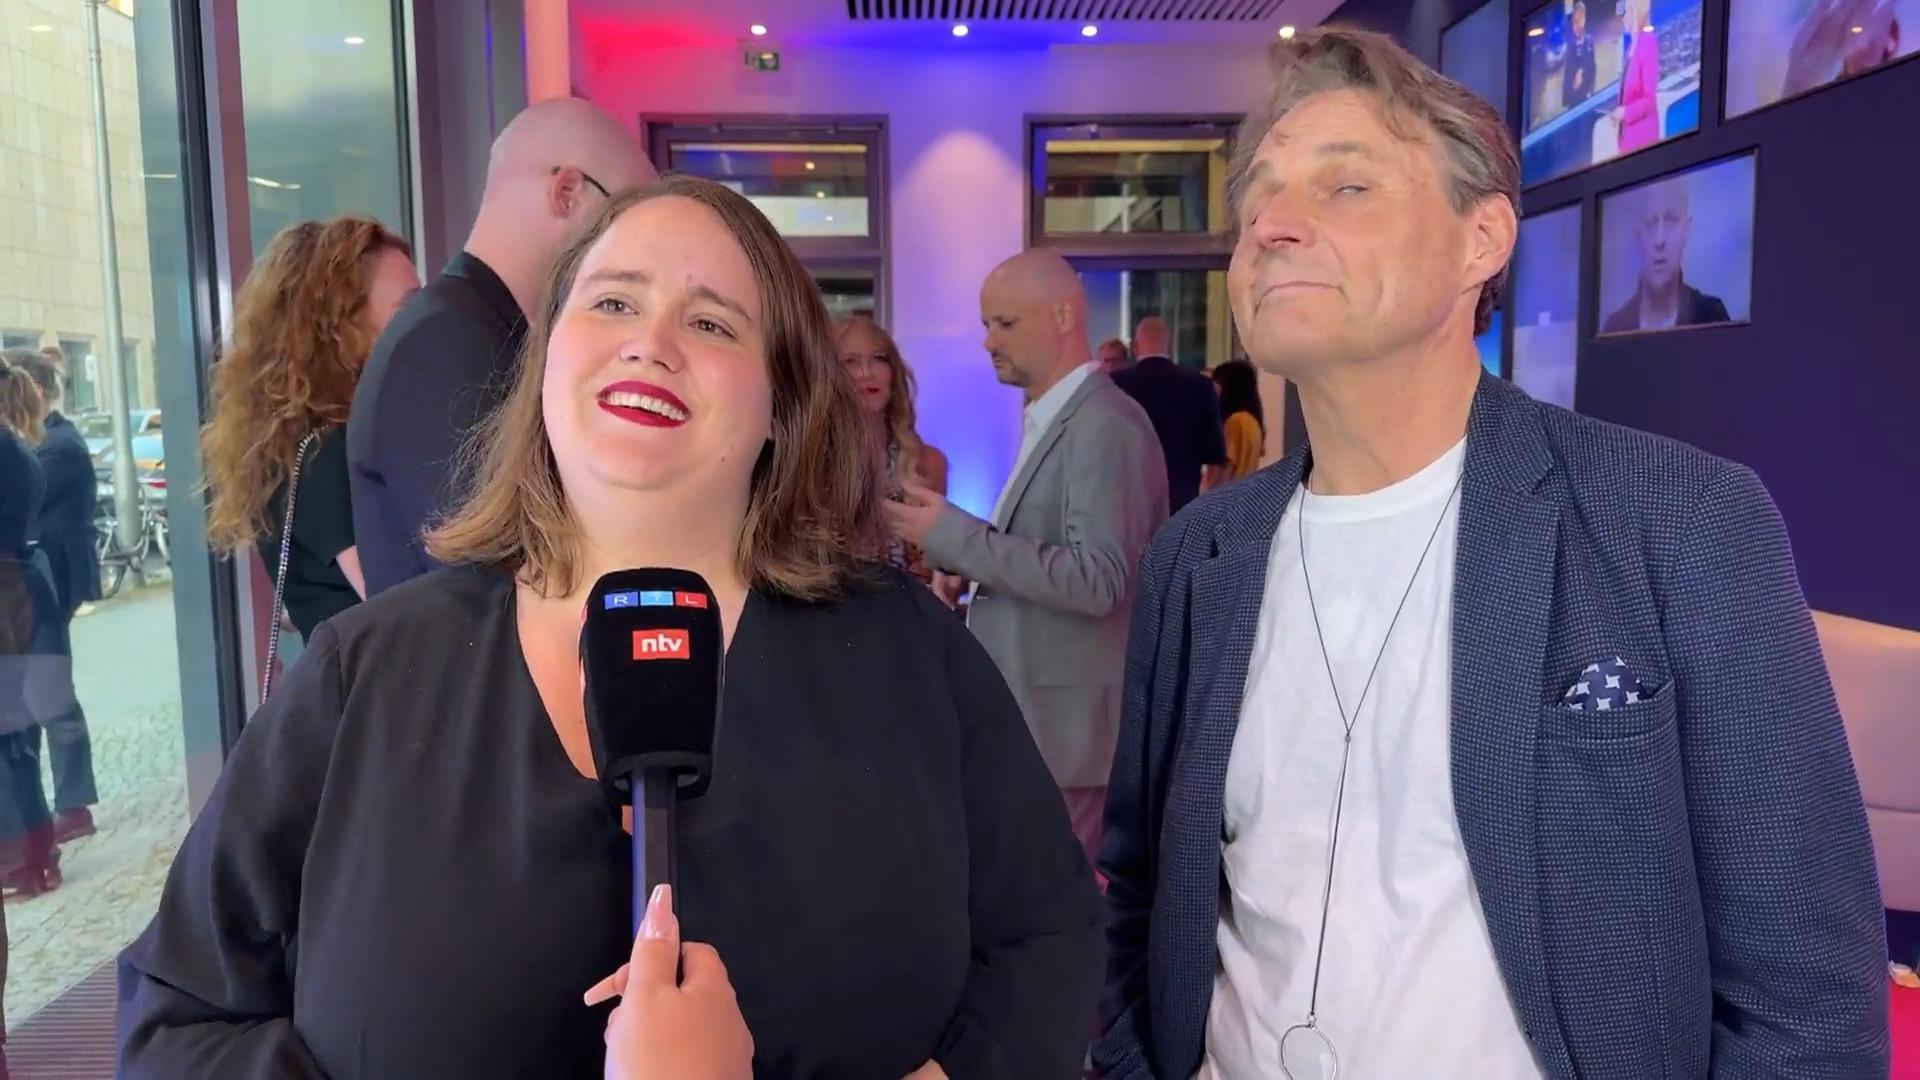 Von seriös bis schrill: Hier treffen Politiker Promis So war das RTL-Sommerfest